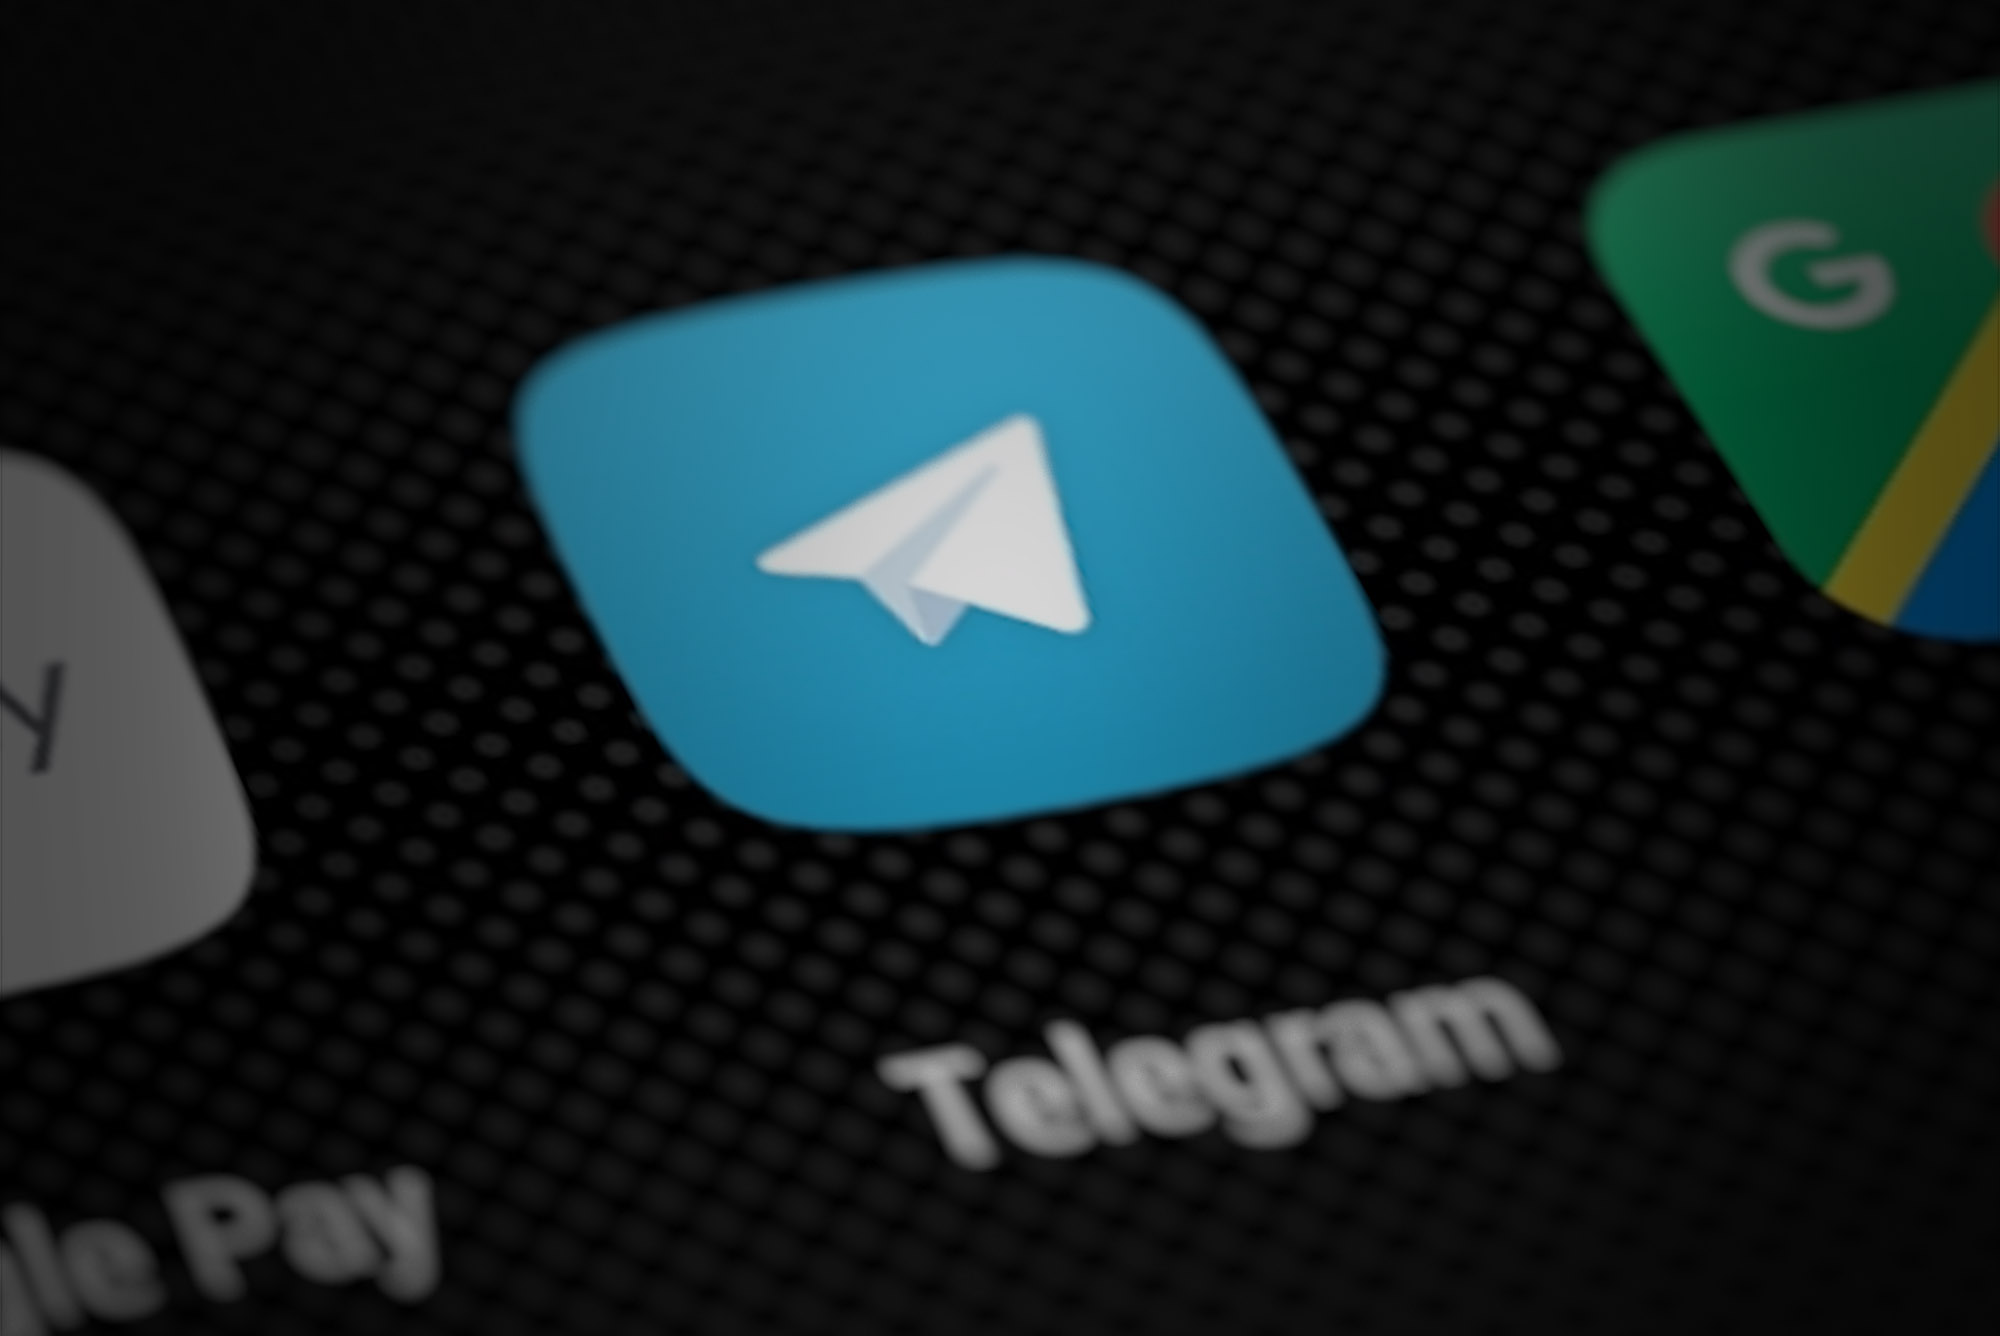 风险提示：购买低价Telegram账号可能带来法律风险